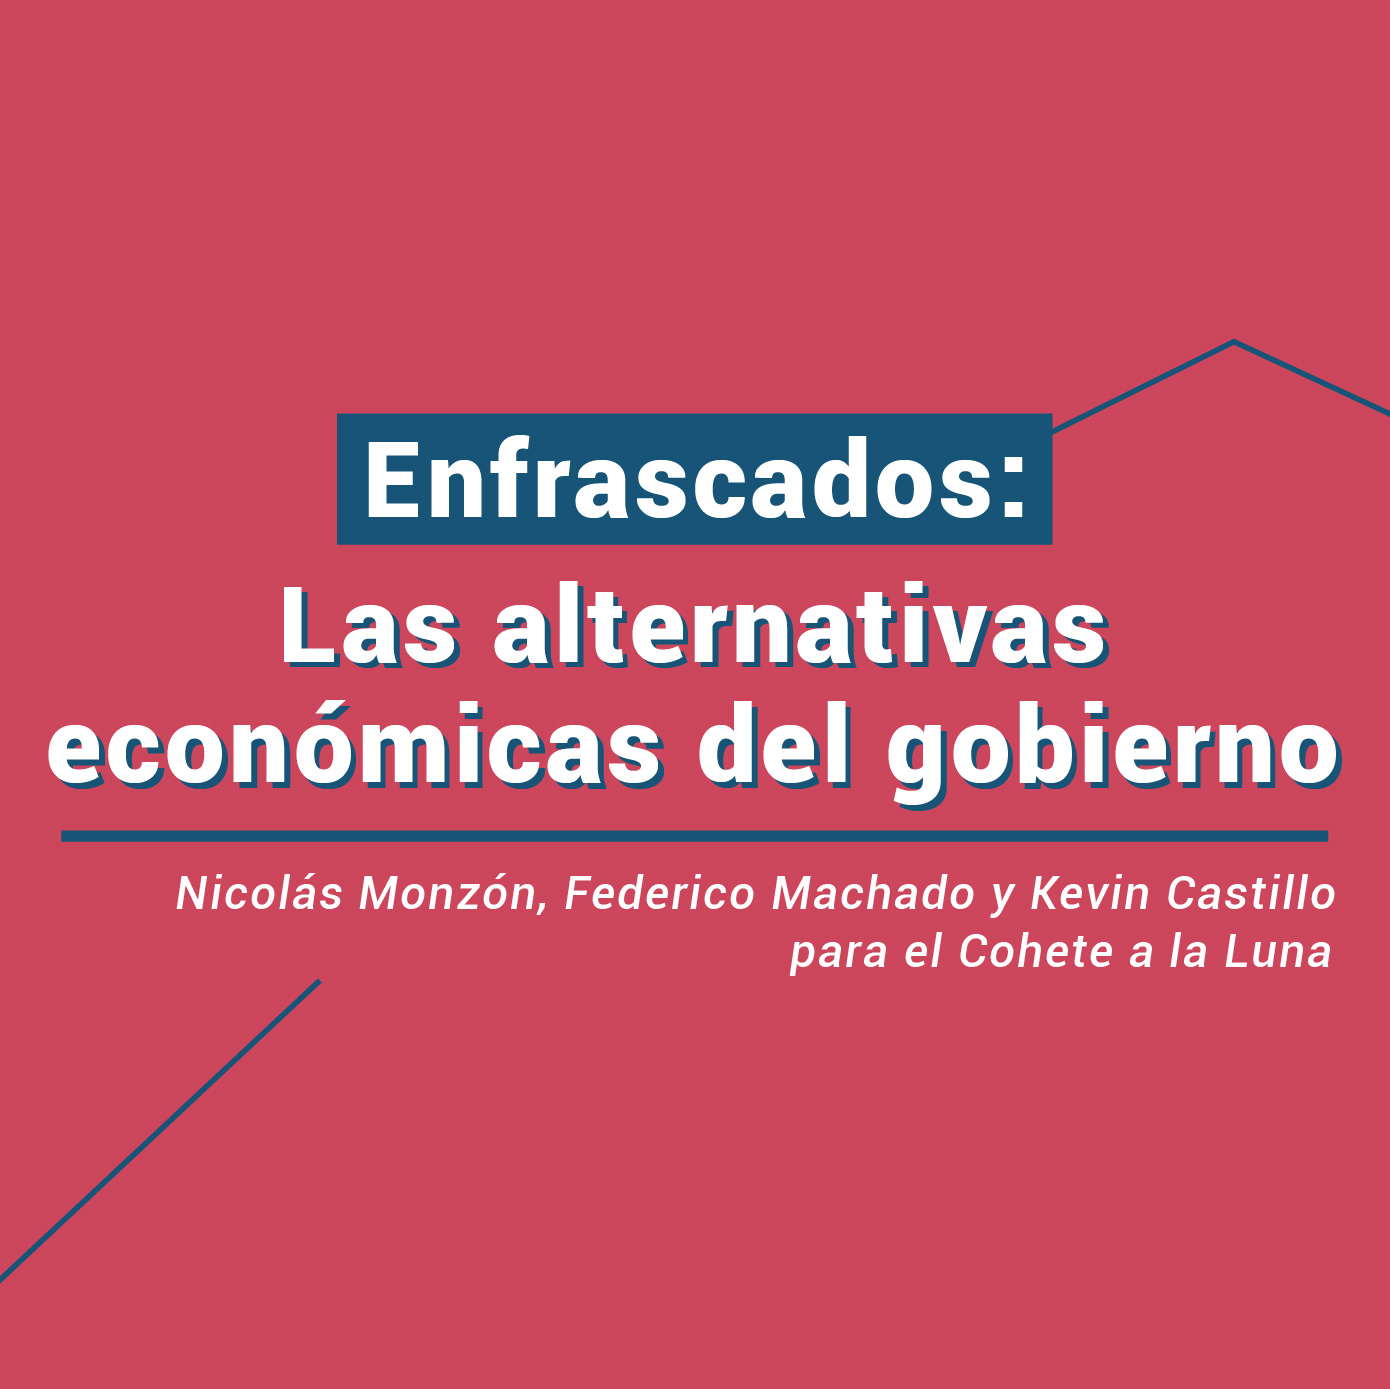 ENFRASCADOS: Las alternativas económicas del gobierno